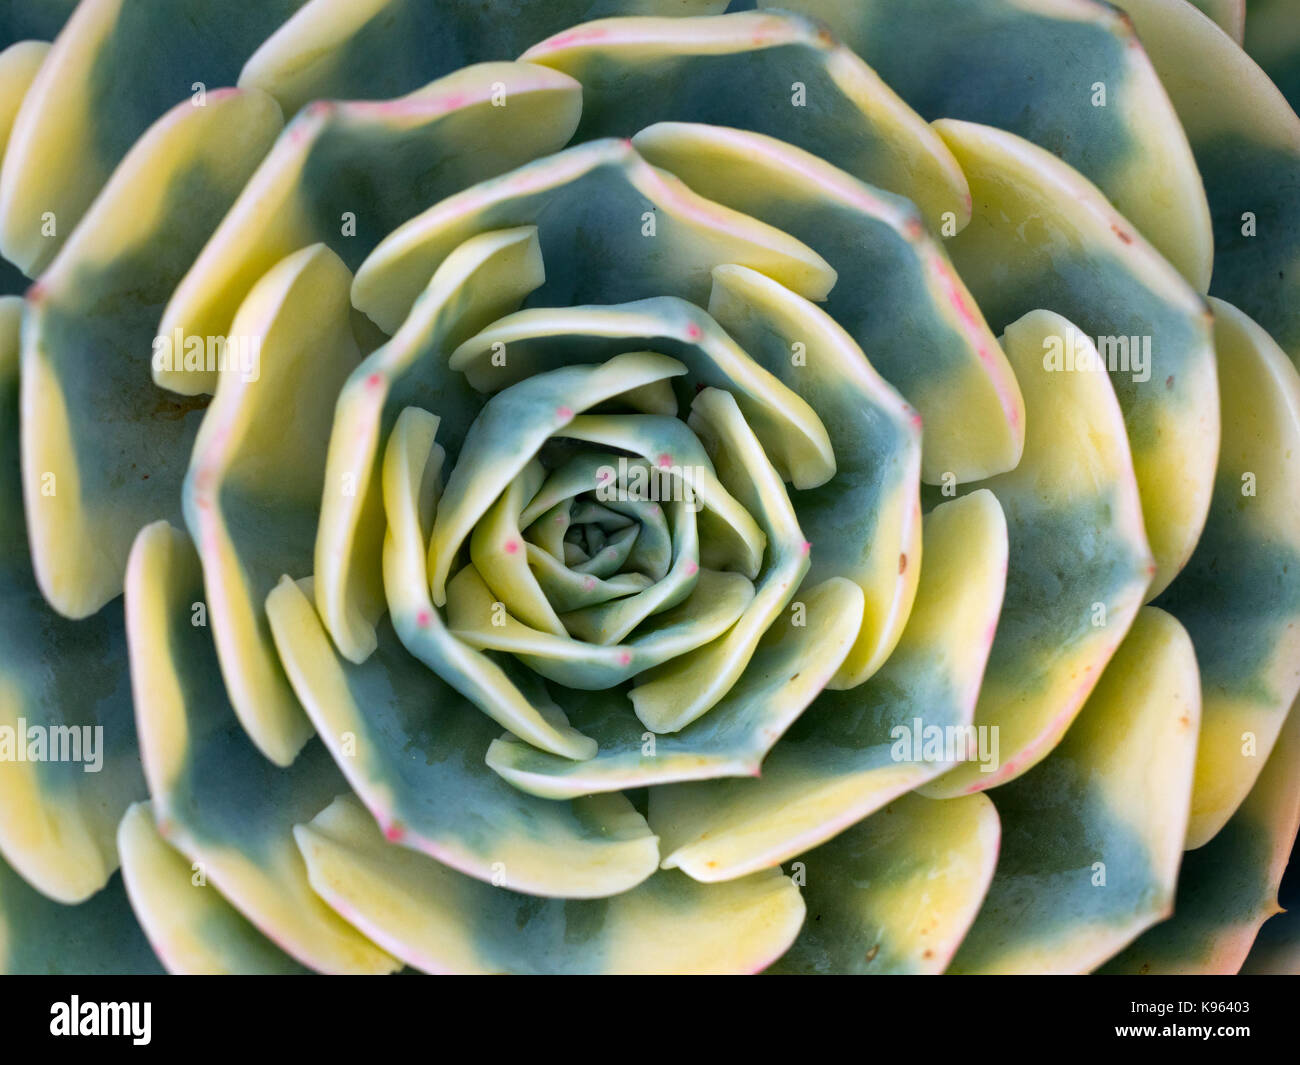 Aeonium sunburst suculentas tolerantes a la sequía en estrecha mostrando detalles de rayas Foto de stock